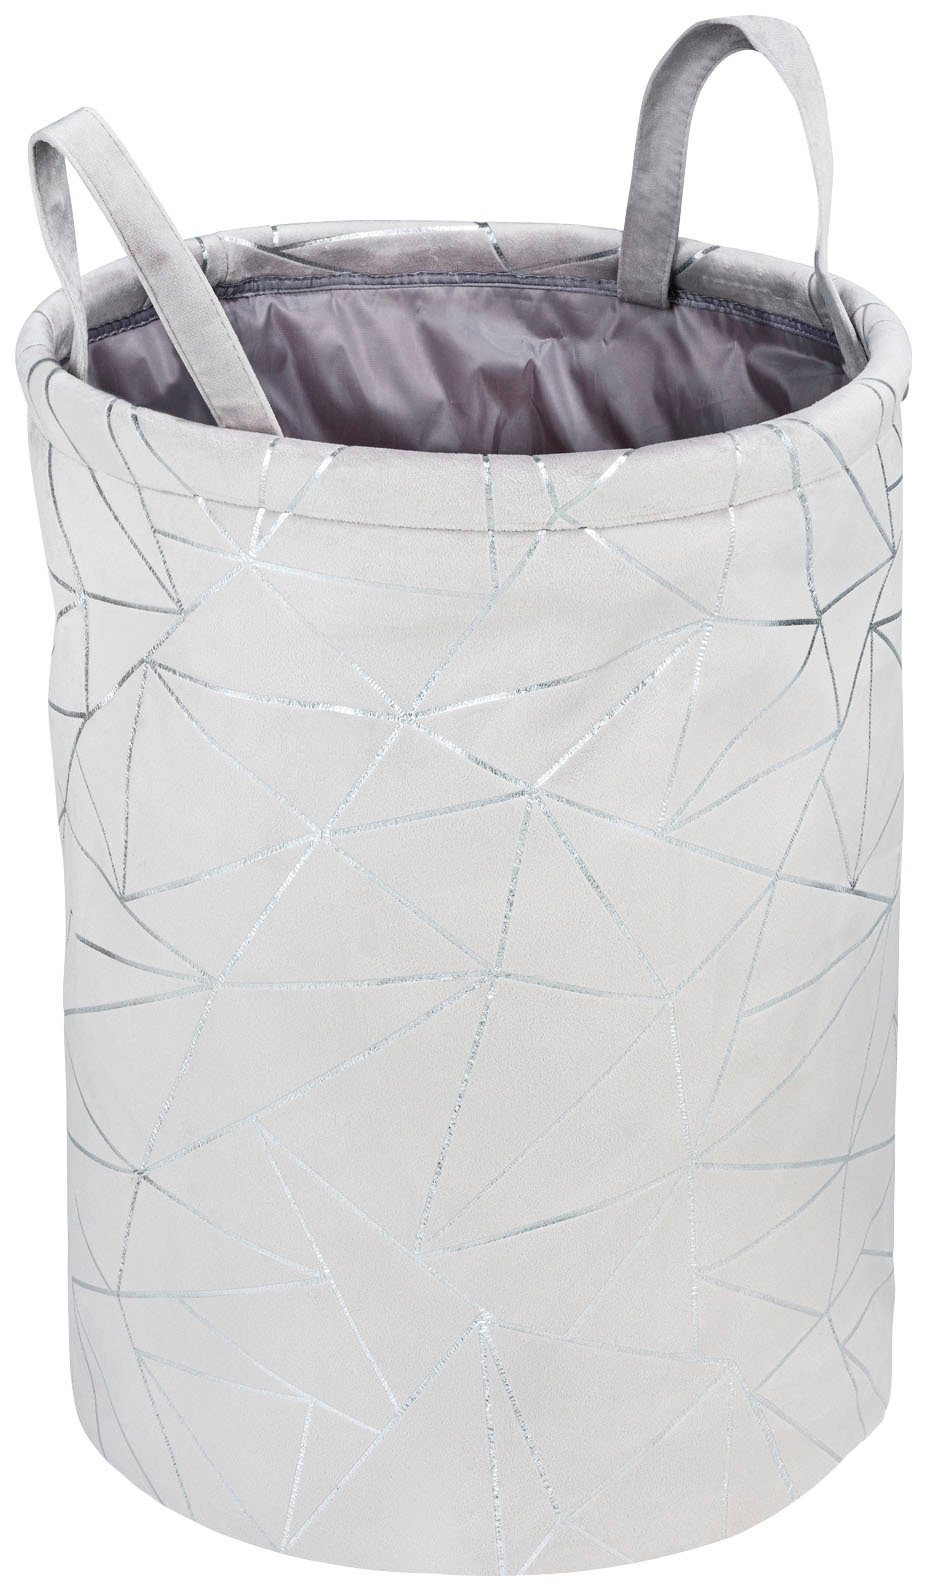 WENKO Wasverzamelaar Samira, ronde, grijze wasmand van zacht vilt met glinsterende, zilverkleurige decoprint, met twee praktische handvatten voor gemakkelijk transport, inhoud 69 l